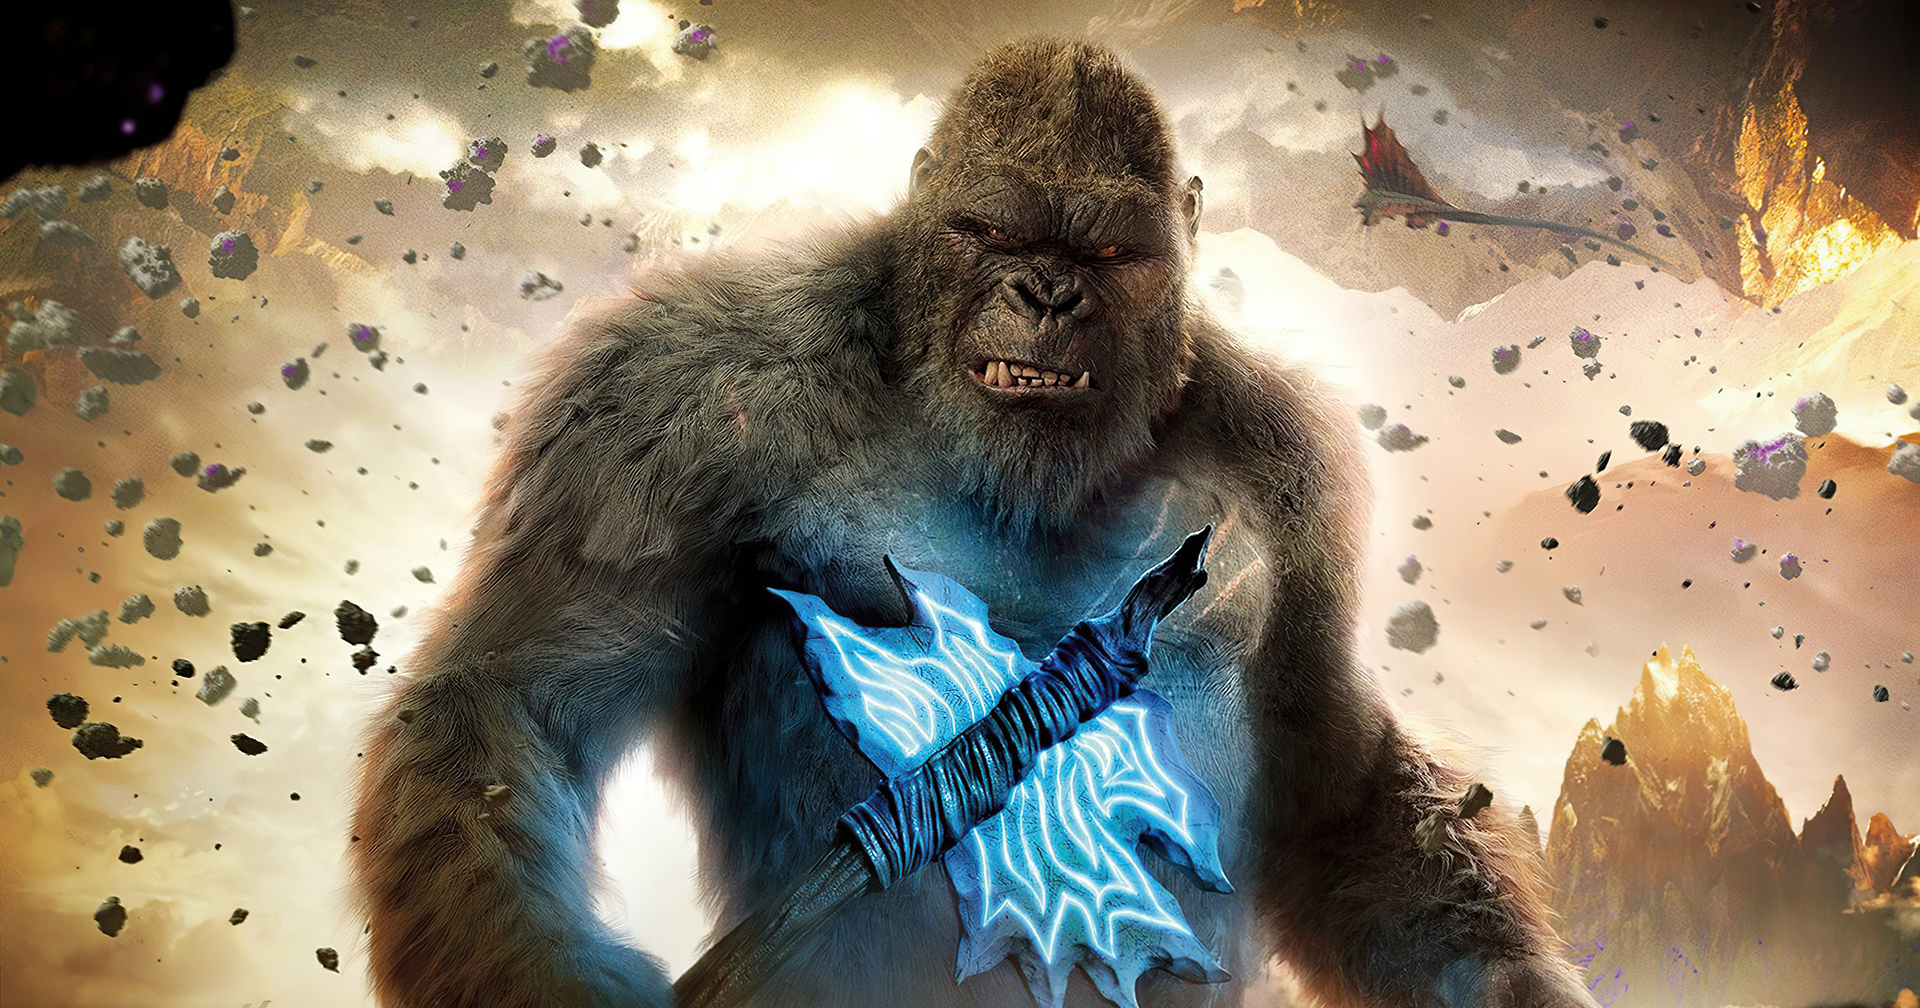 ผู้กำกับ Godzilla vs Kong เผย : มีฟุตเทจมากพอจะตัดต่อเวอร์ชัน 5 ชั่วโมงได้